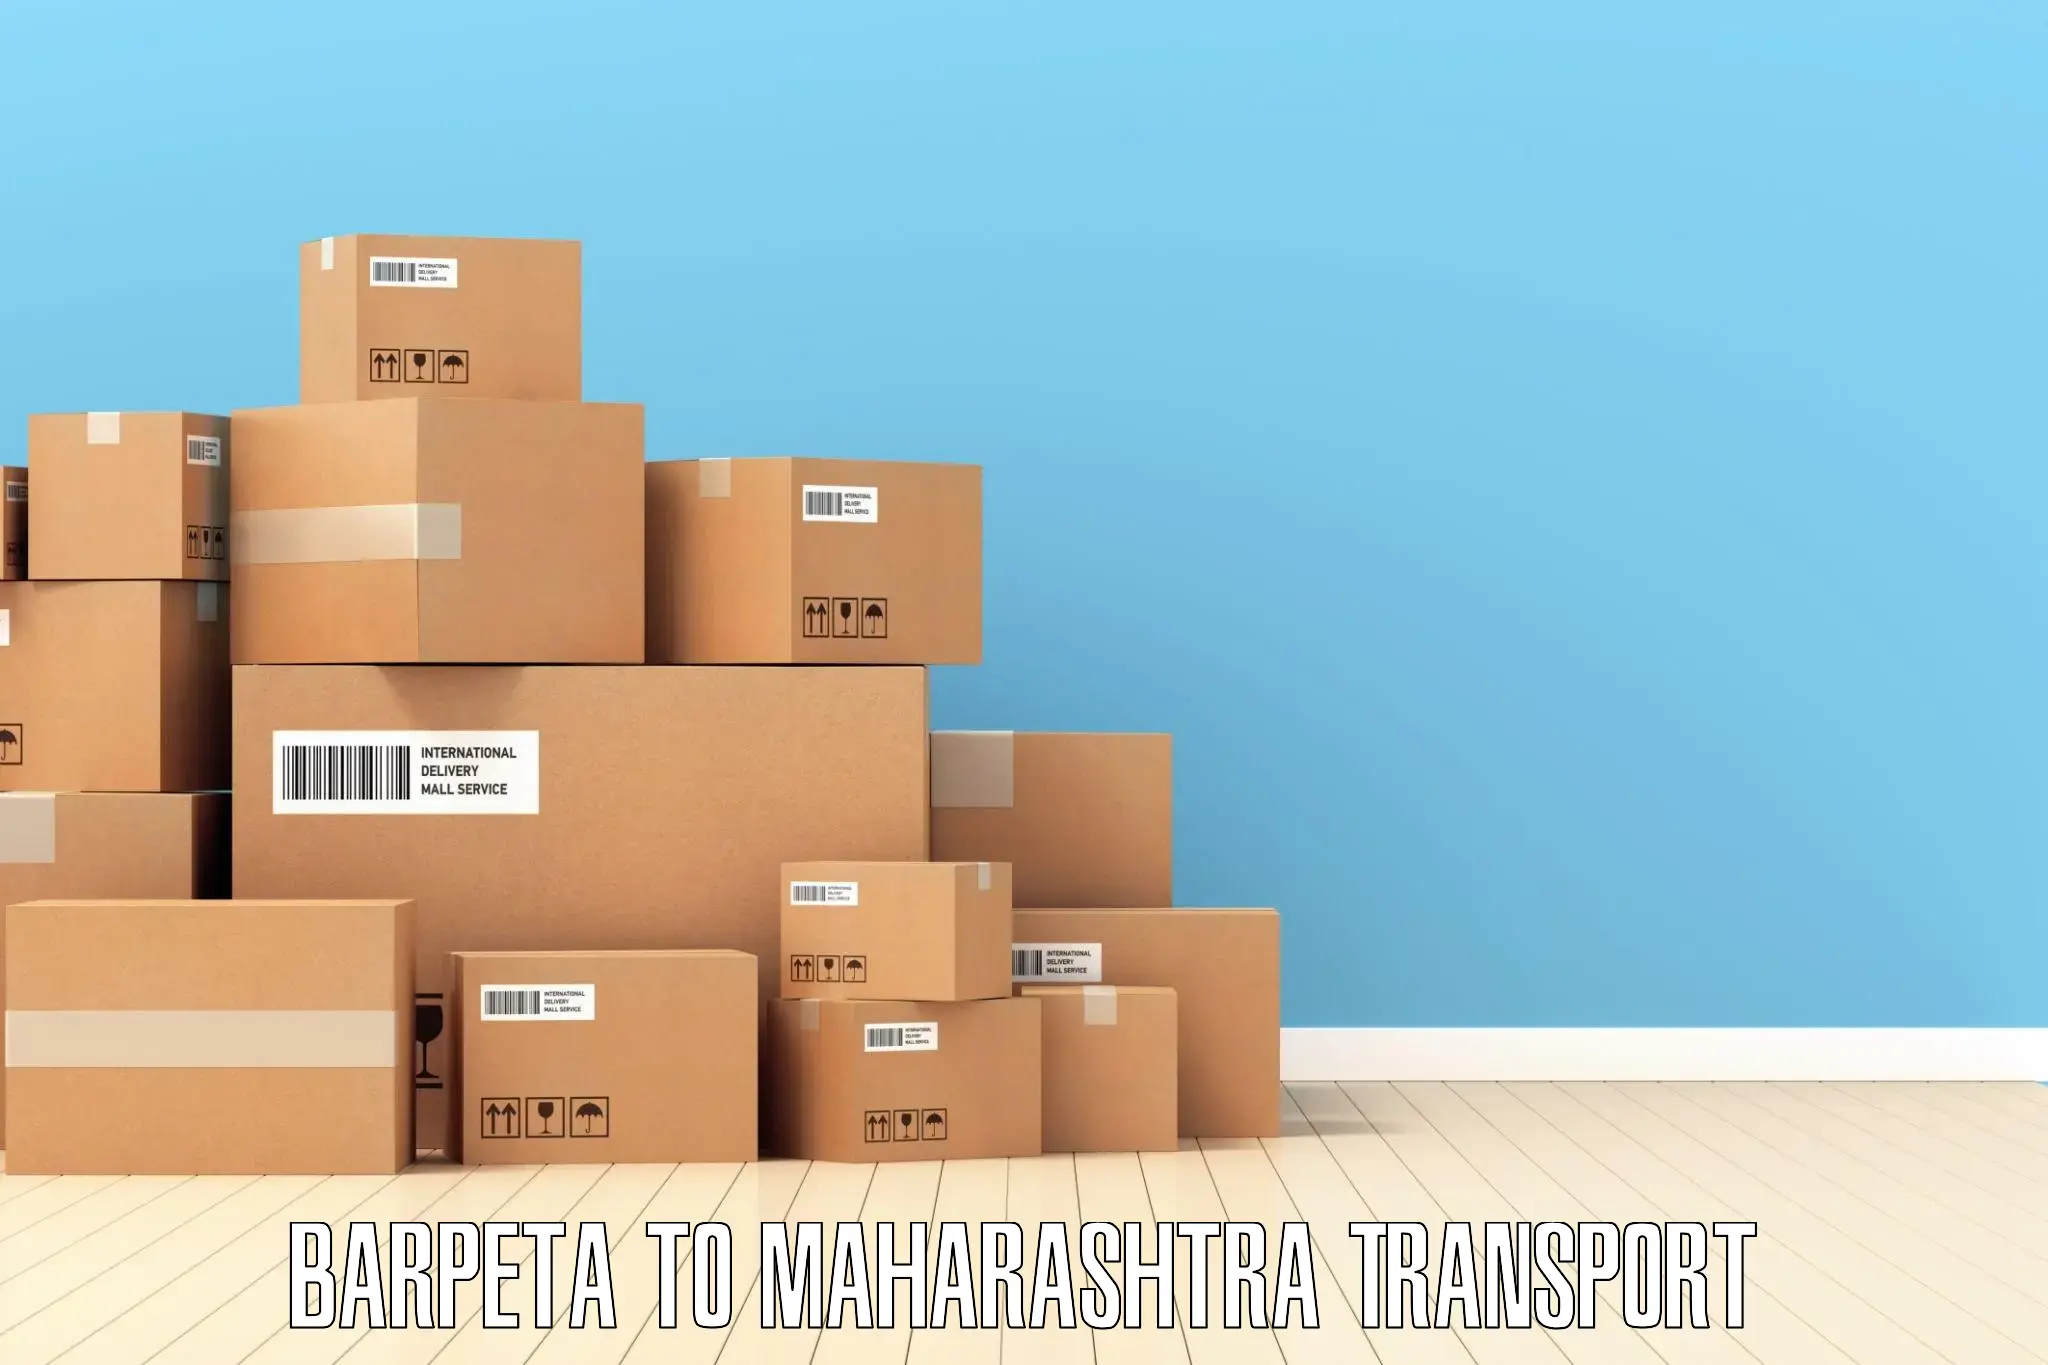 Cargo train transport services Barpeta to Maharashtra